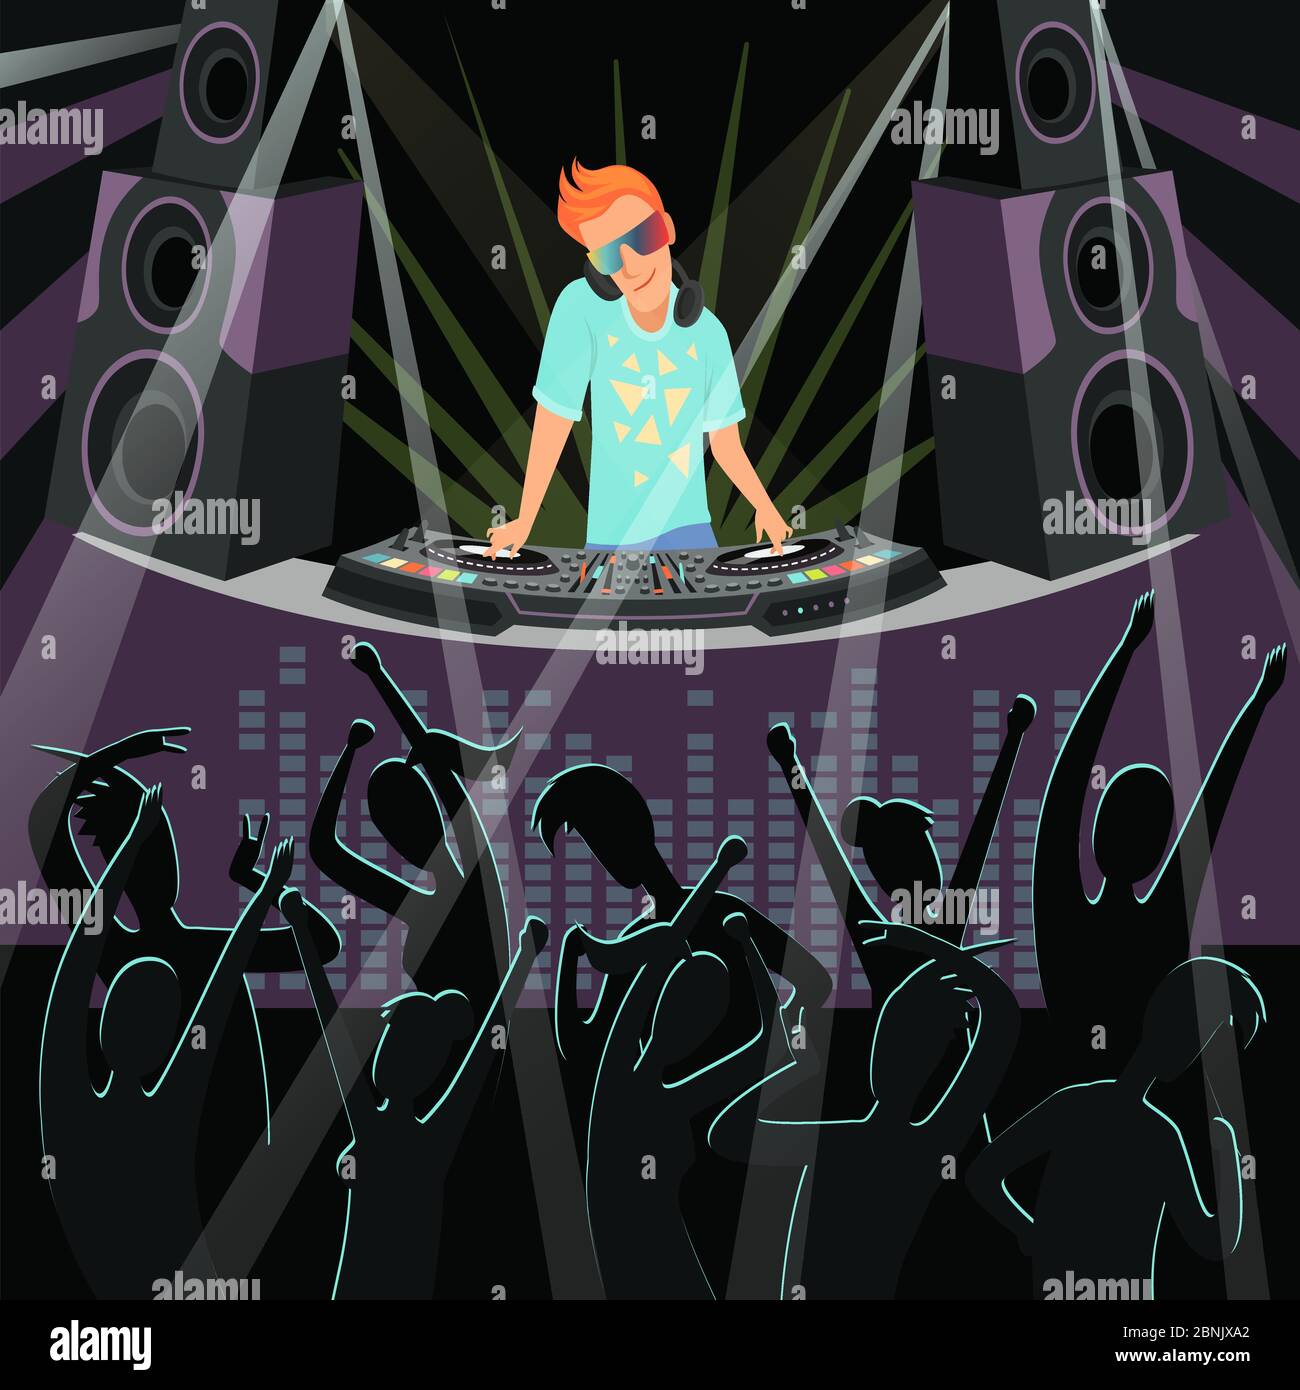 Fond DJ Party. Illustrations de fond de la soirée disco à la discothèque Illustration de Vecteur